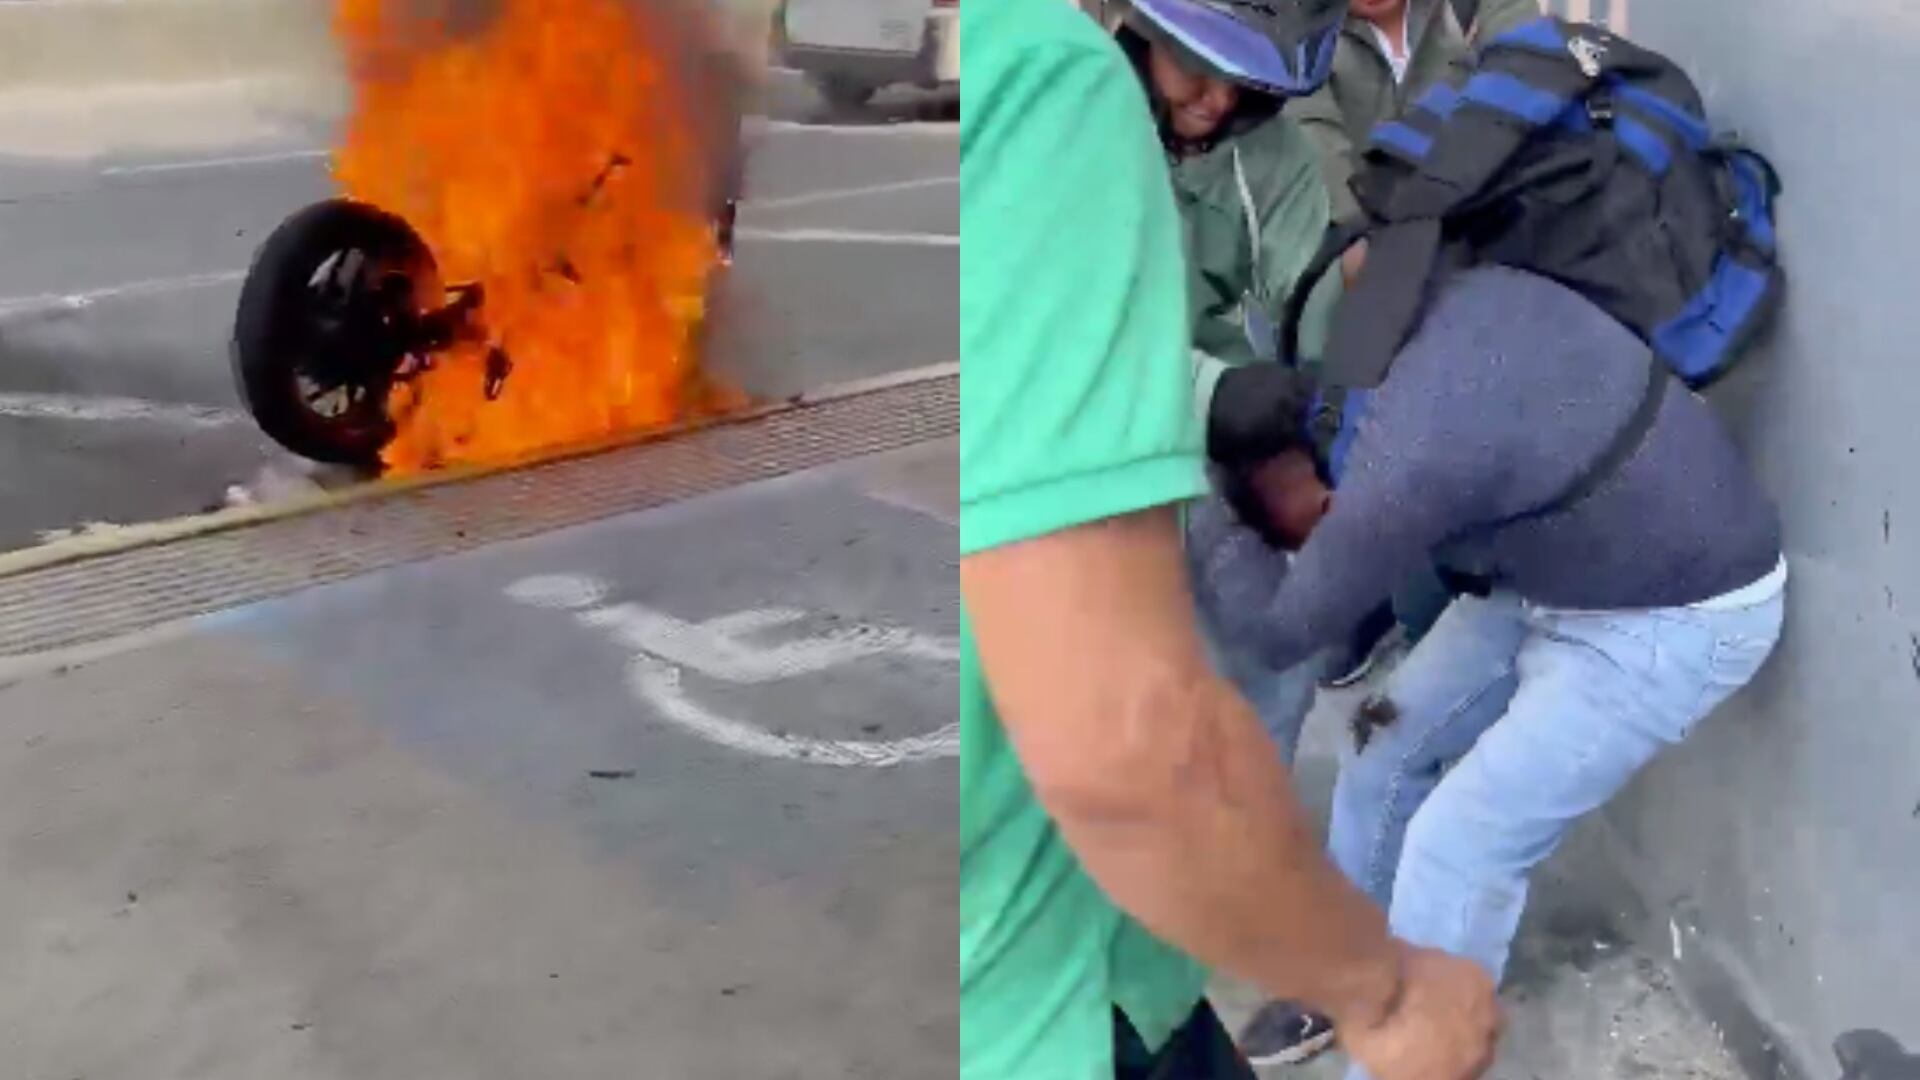 Ciudadanos toman justicia por mano propia y queman moto de un presunto ladrón de celulares. Esto ocurrió en la Avenida Ciudad de Cali.